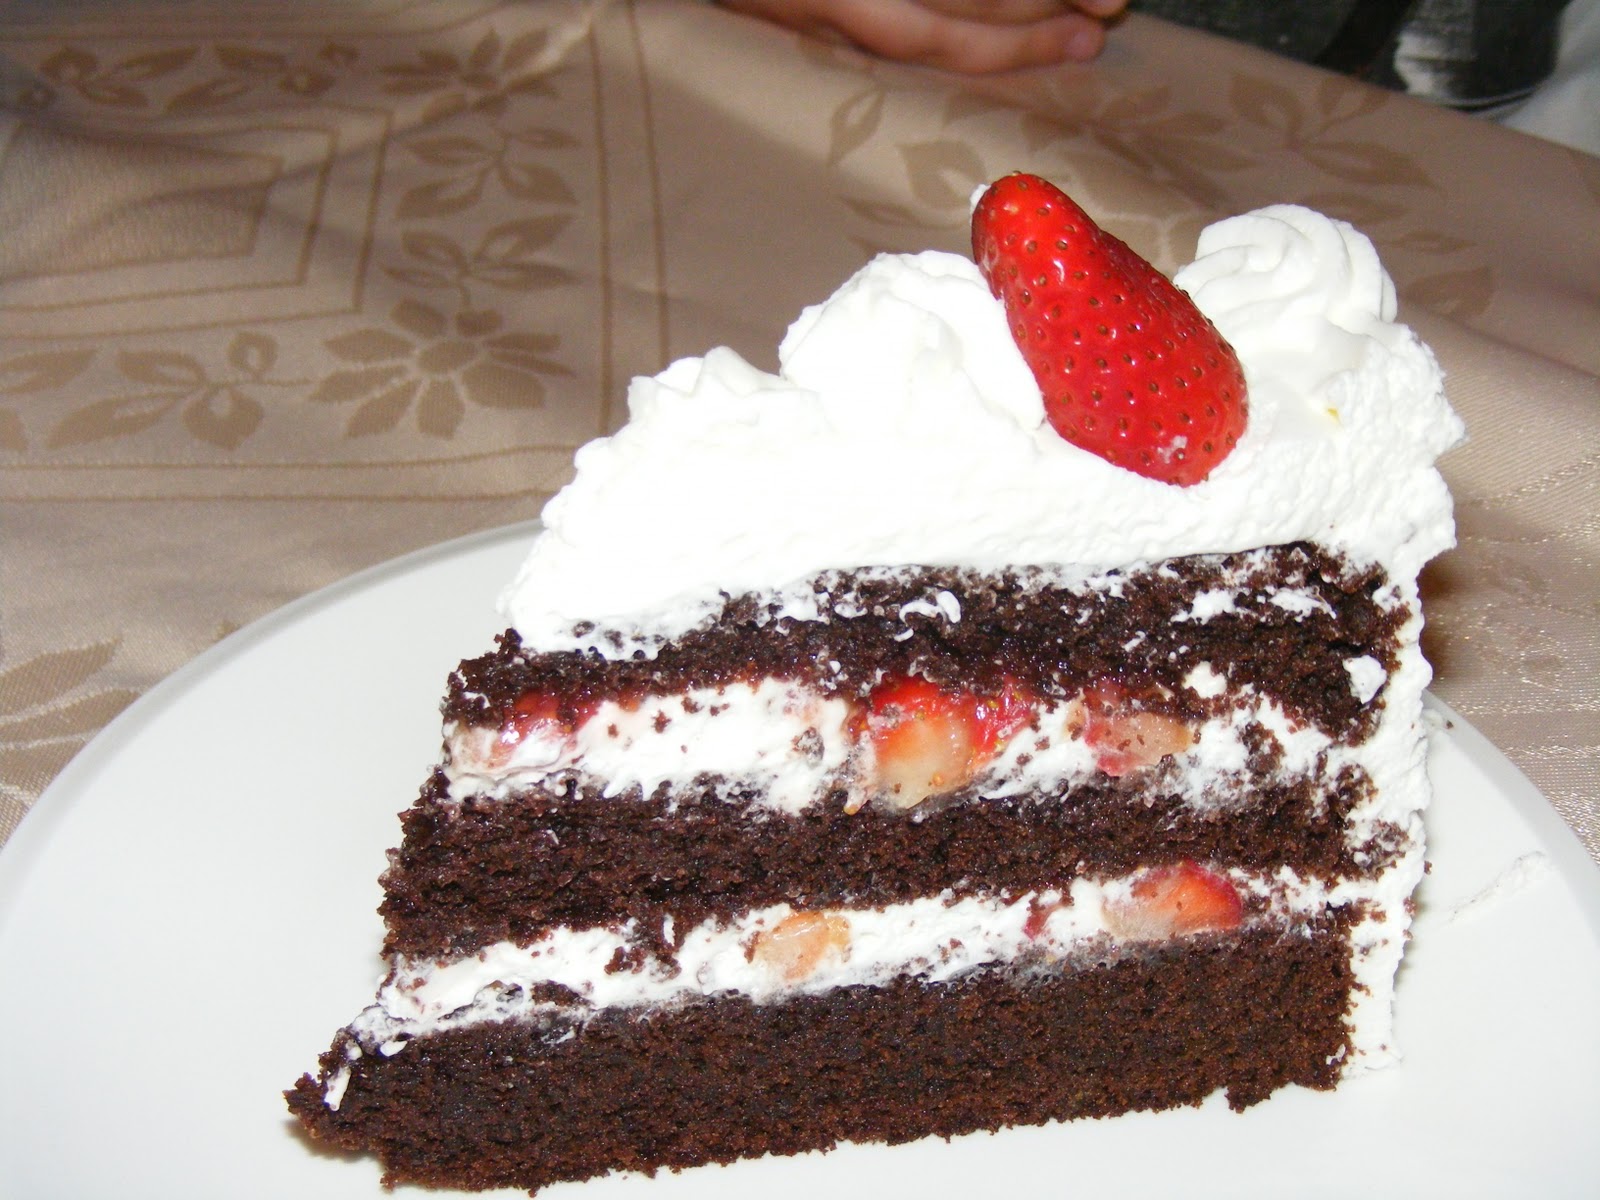 Layer cake fraises chocolat et chantilly au mascarpone10